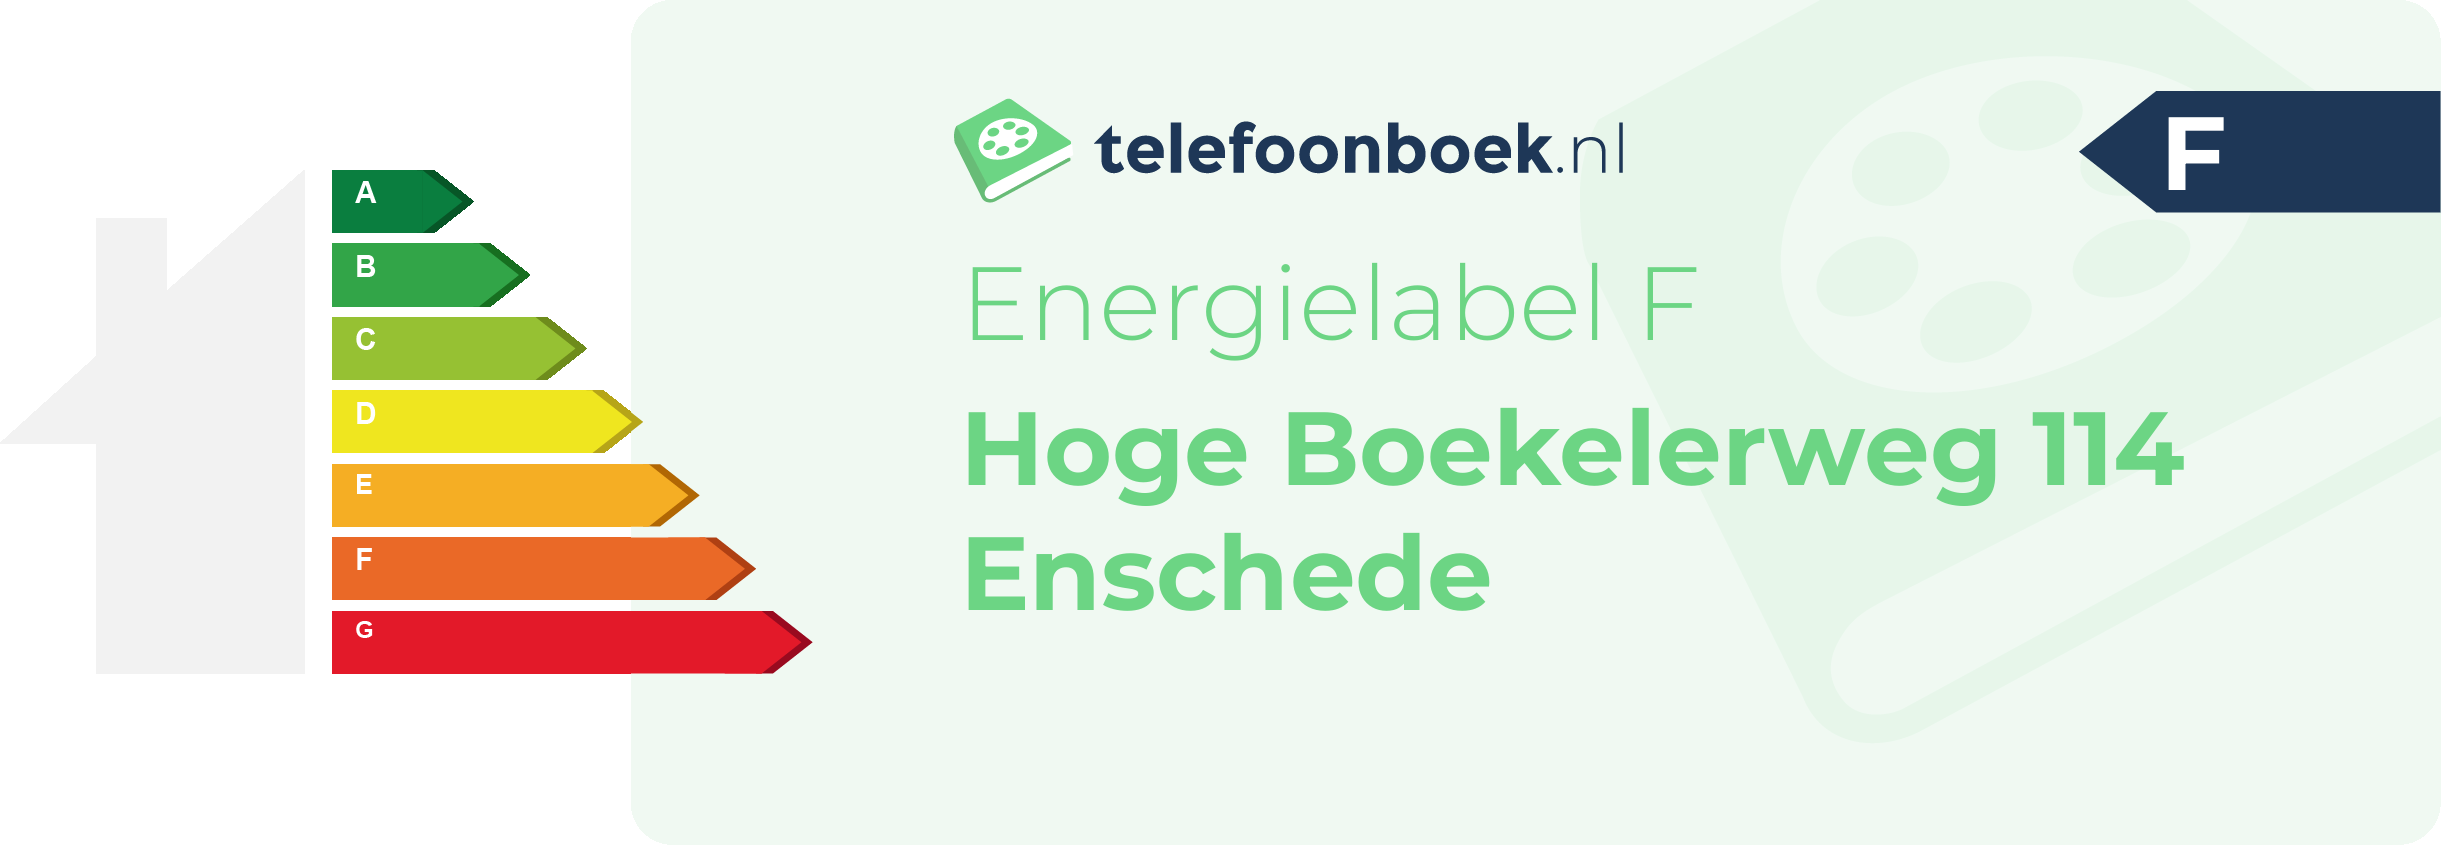 Energielabel Hoge Boekelerweg 114 Enschede